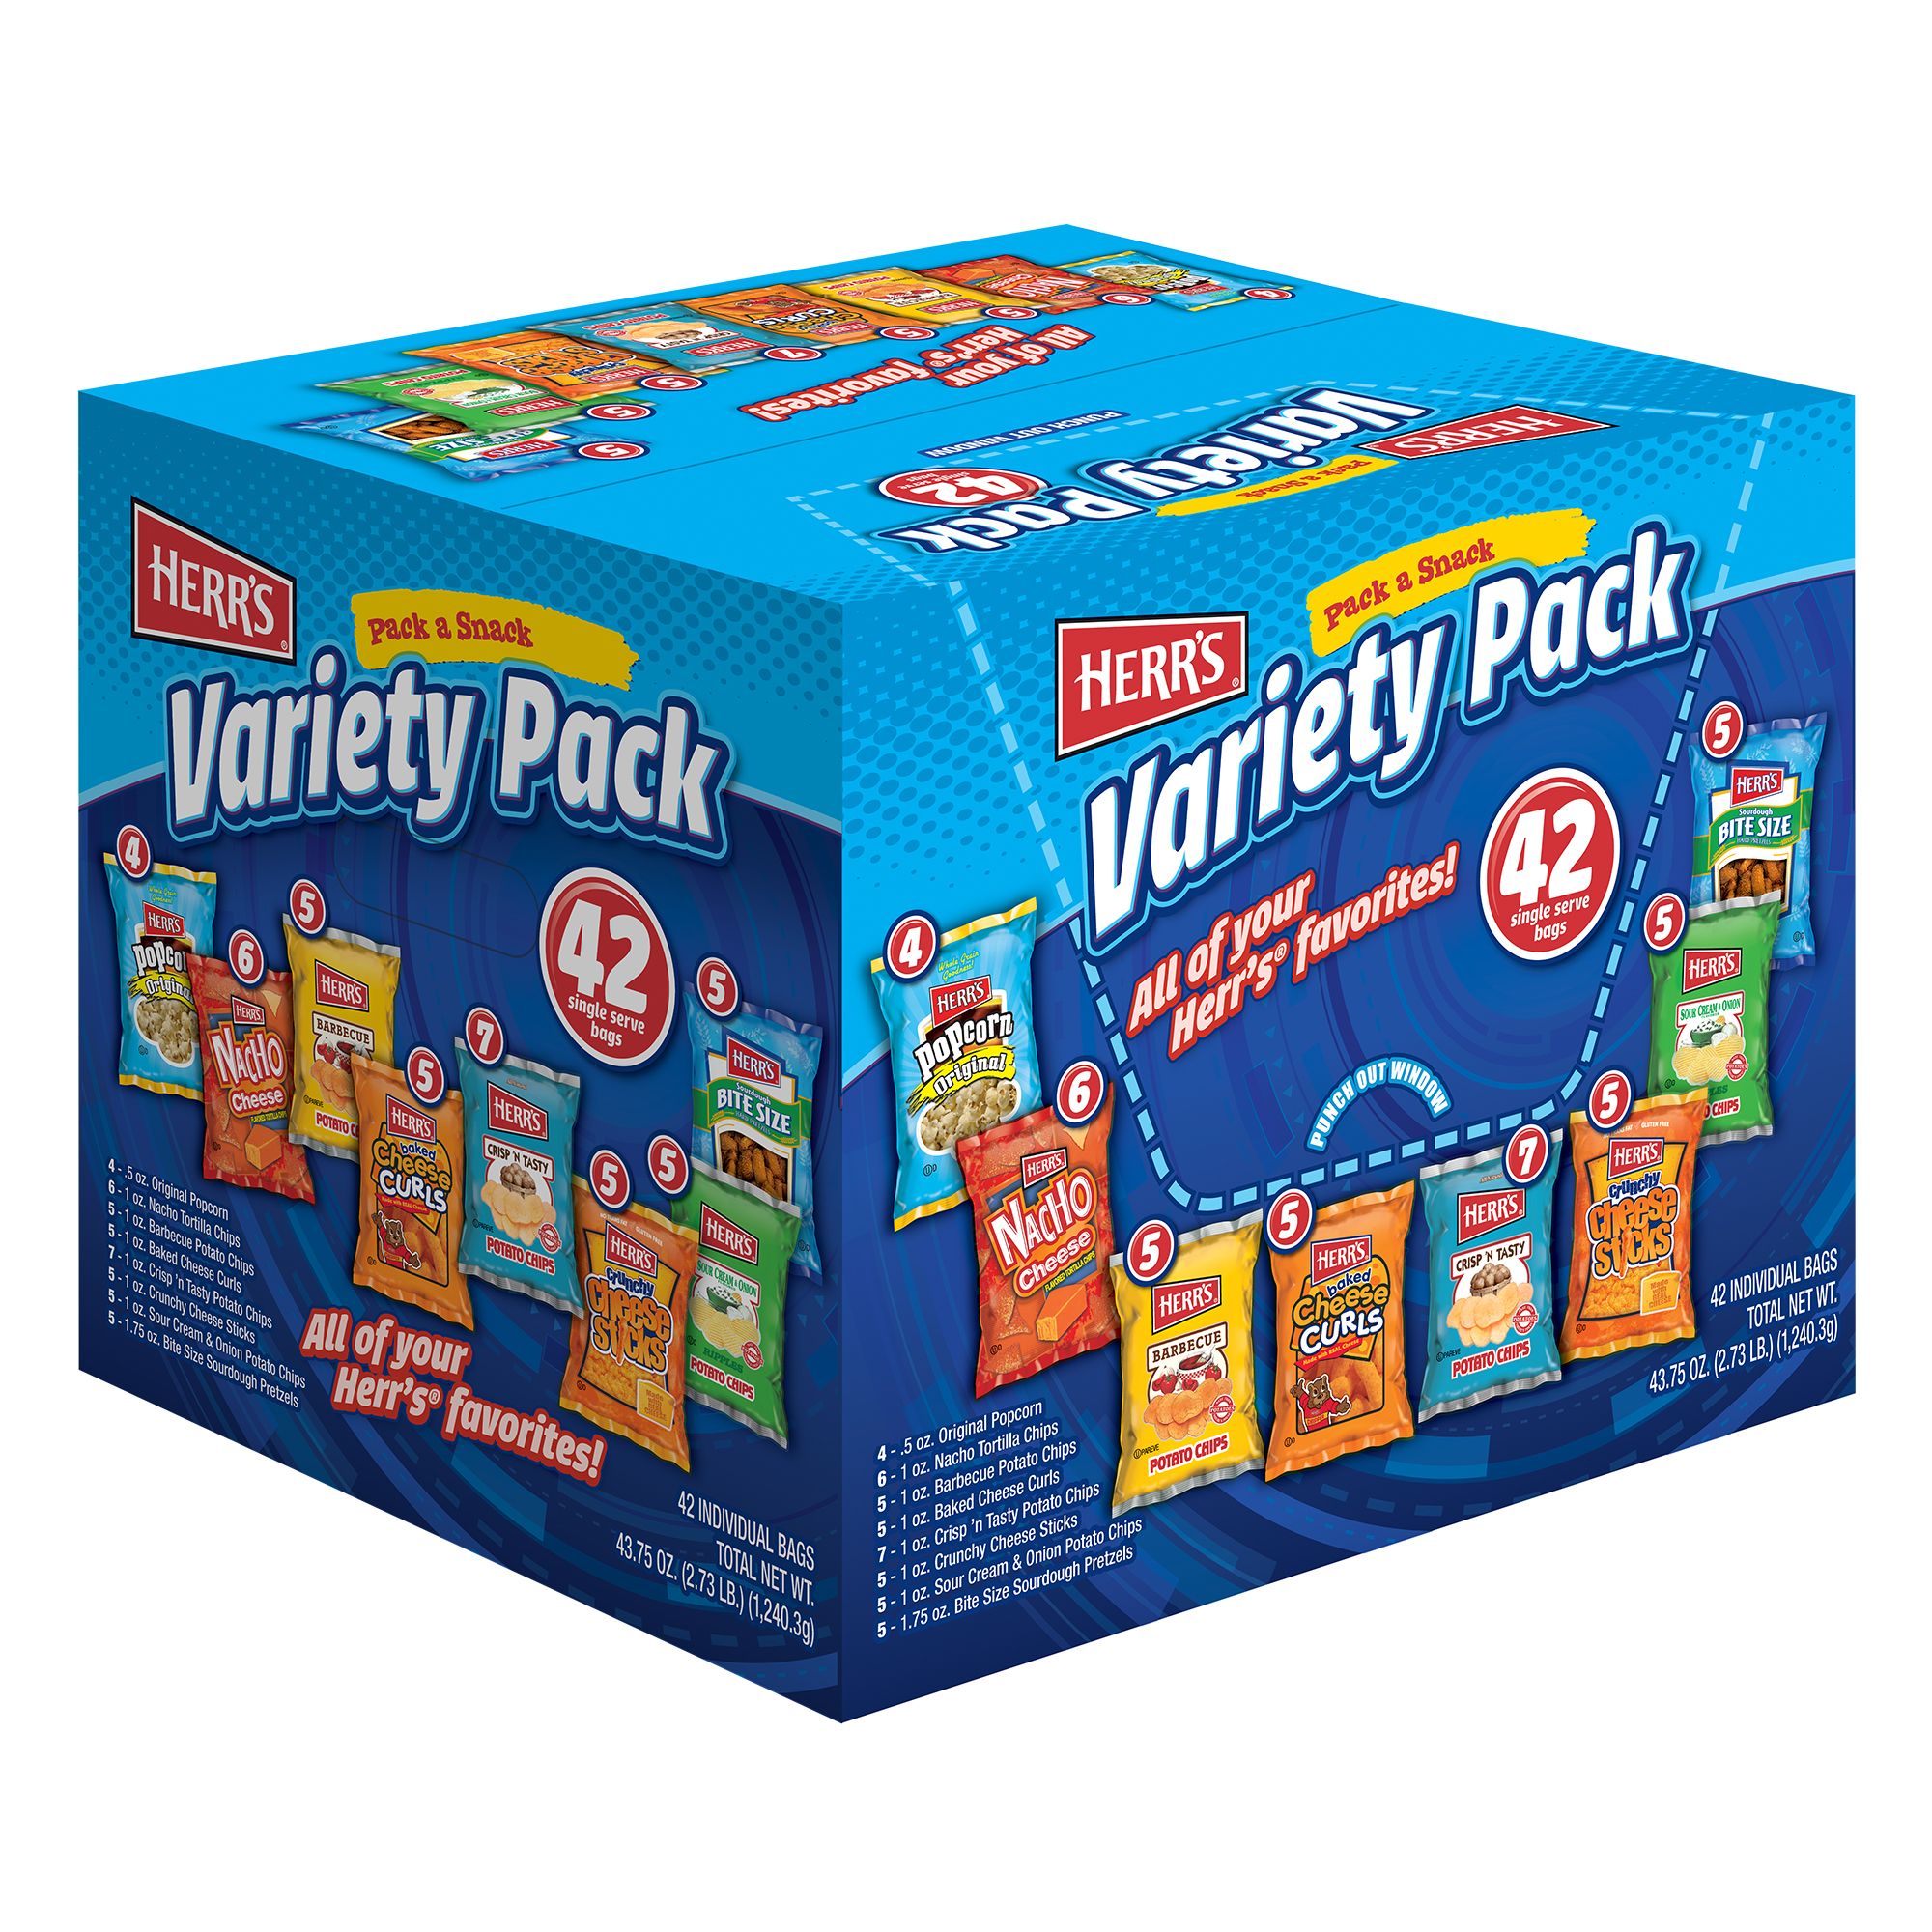 Grab & Snack Variety Packs — Wise Snacks